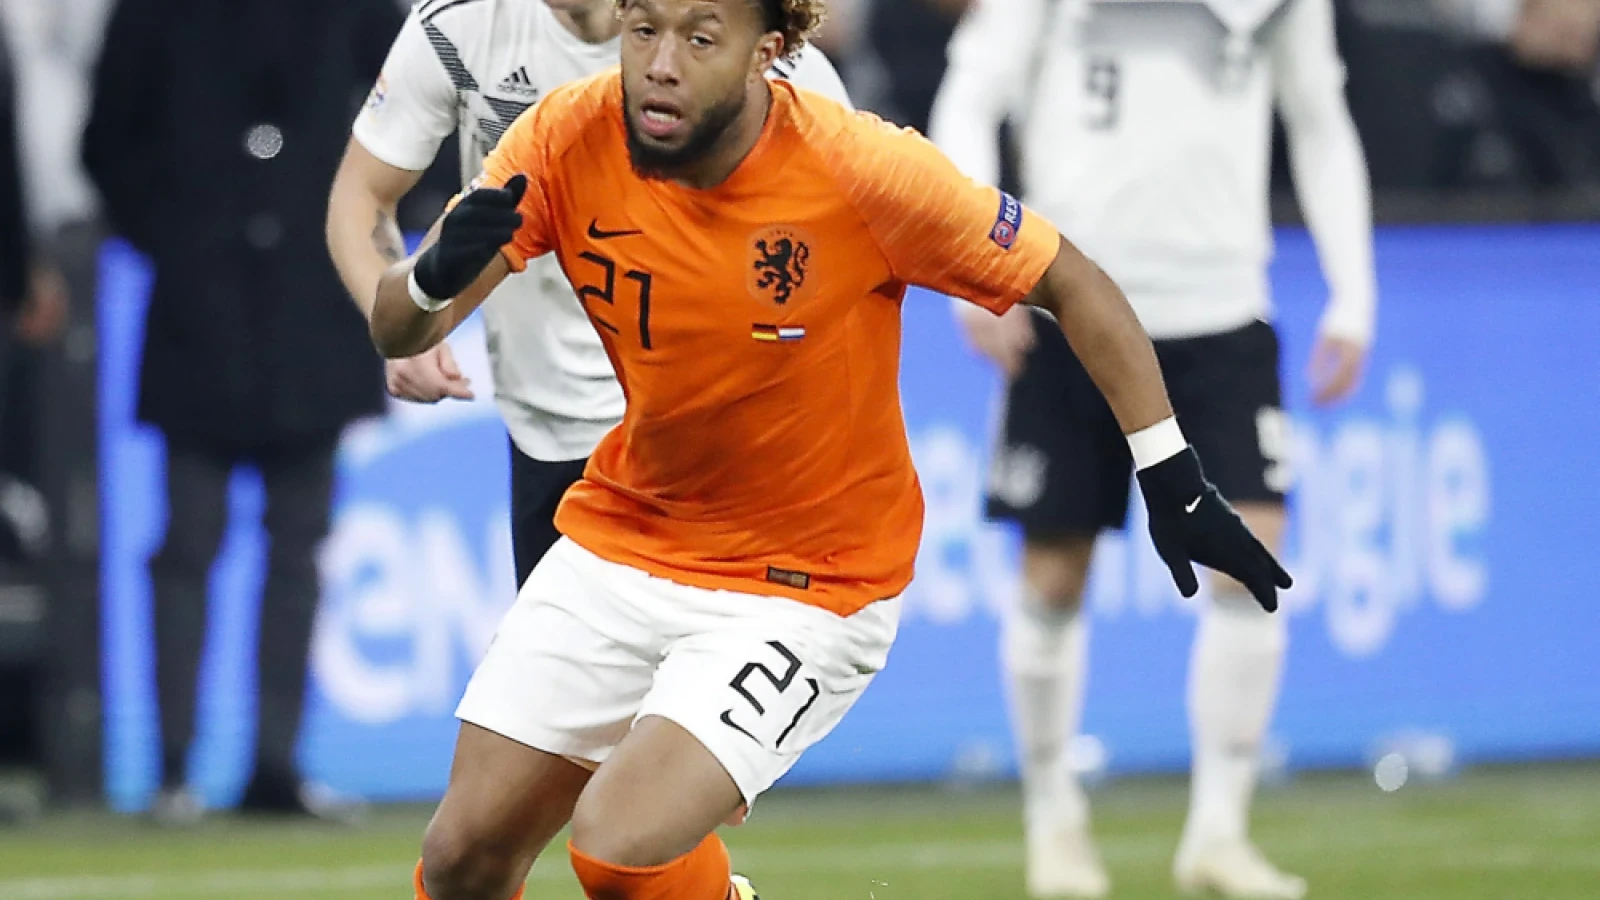 LIVE | Duitsland - Nederland 2-2 | Einde wedstrijd